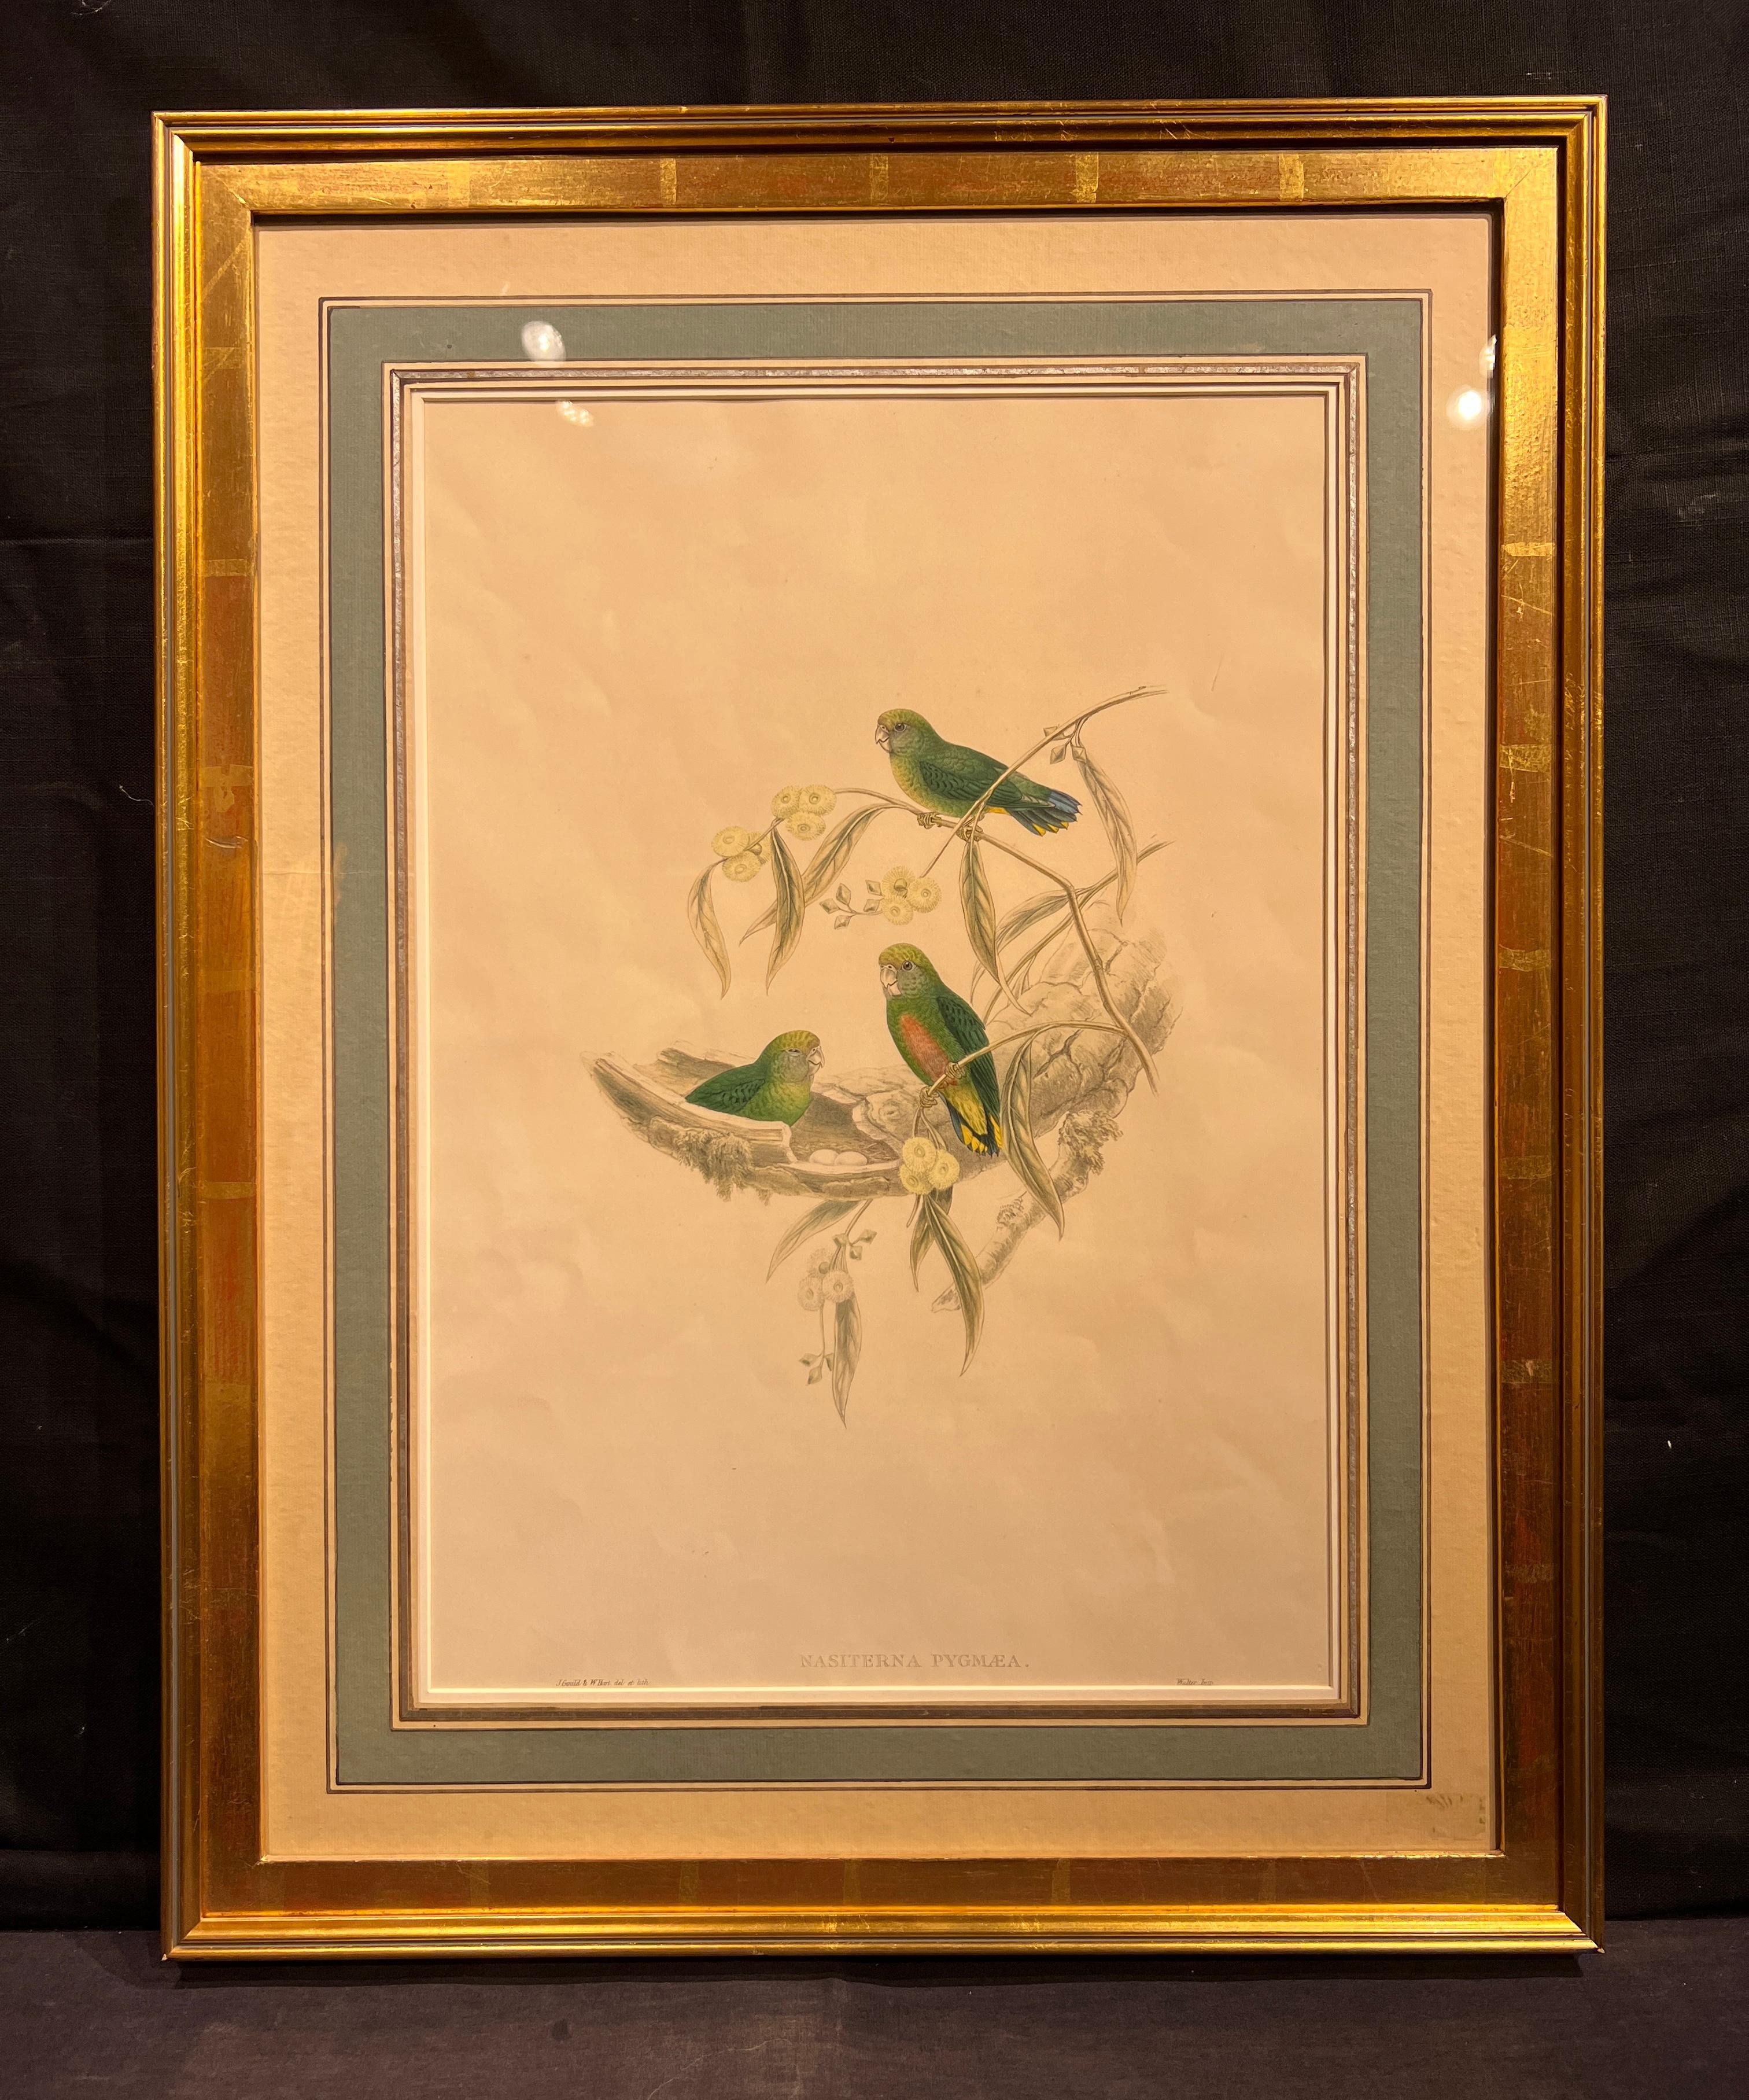 John Gould (britannique, 1804-1881)
Nasiterna Pygmae c. 1849-1861
Lithographie colorée à la main

Taille de l'image : environ 19,5 x 13,5 pouces
Taille encadrée : 27 3/8 x 21 1/2 pouces

John Gould était un ornithologue et un artiste ornithologue